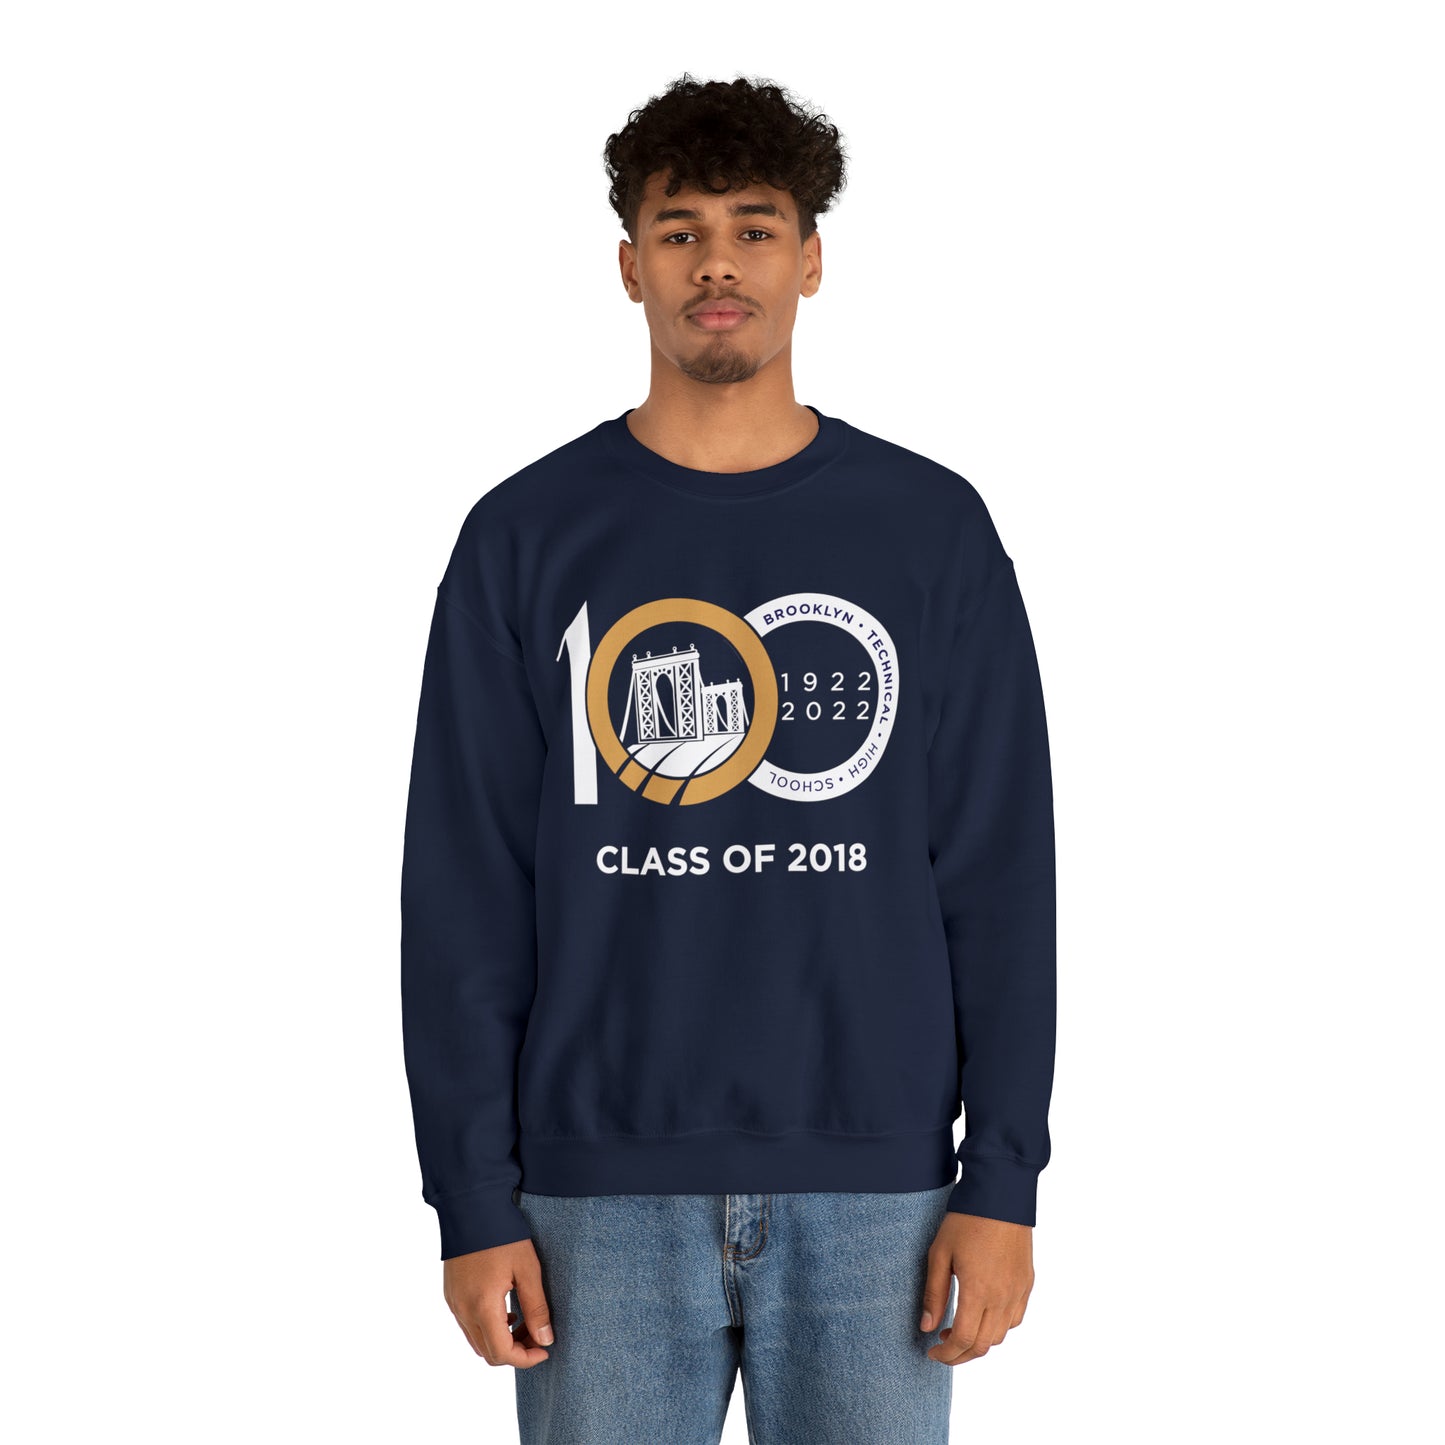 Centennial - Men's Heavy Blend Crewneck Sweatshirt - Class Of 2018